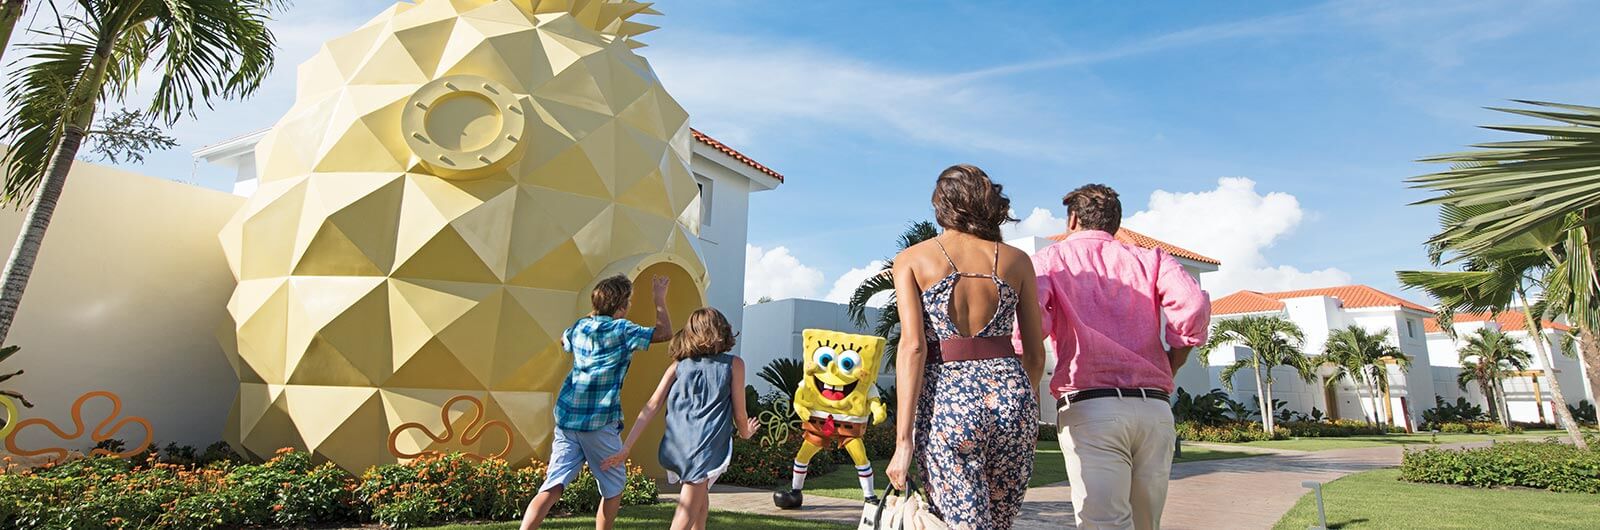 Nickelodeon Resort Punta Cana Accommodations - The Pineapple